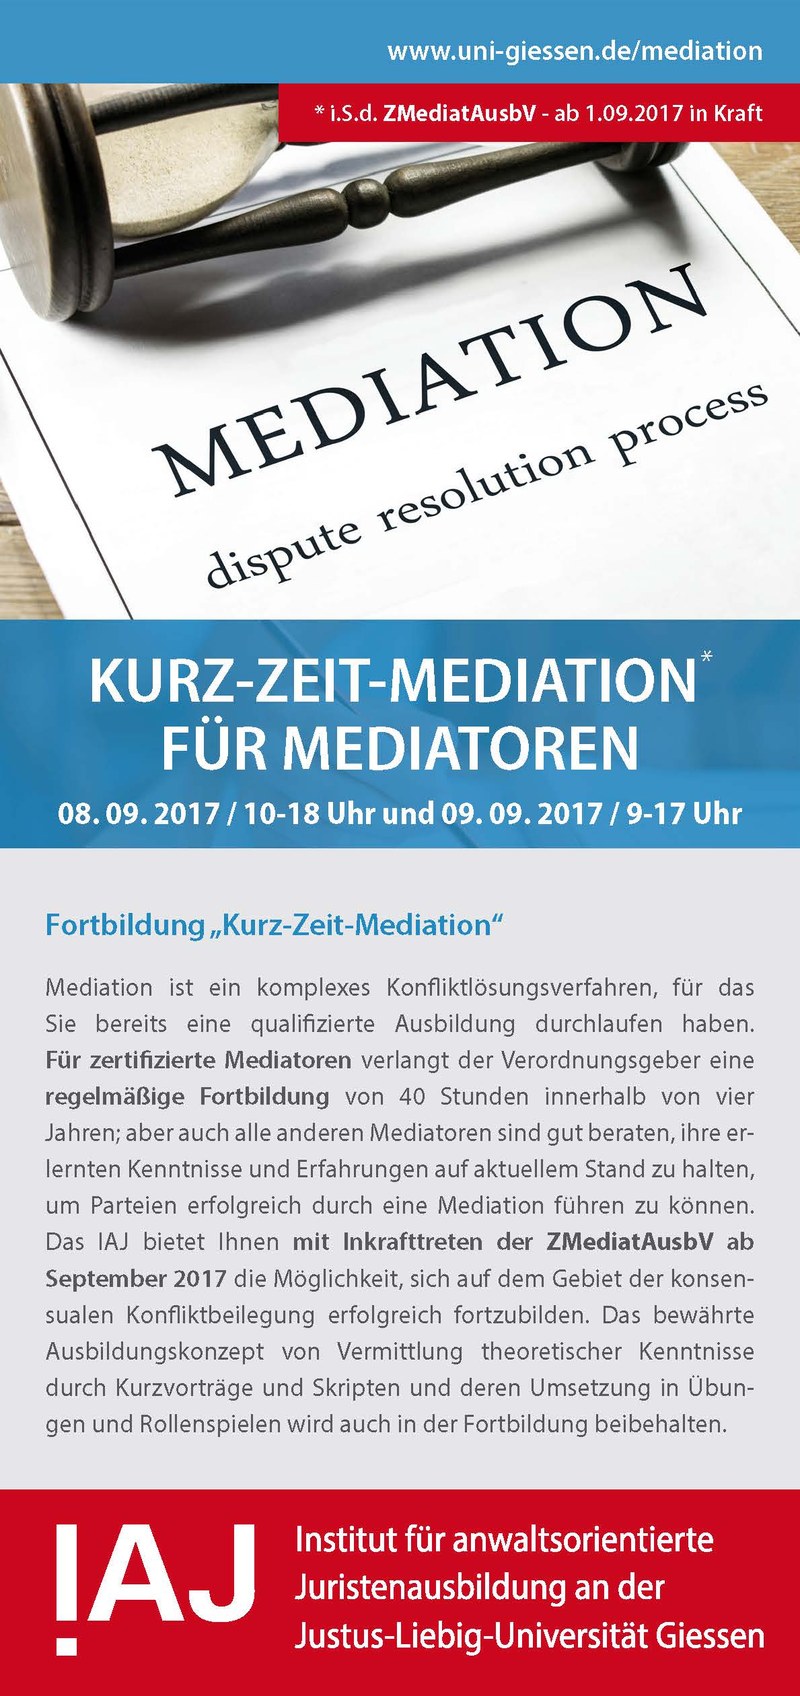 Teaser Bild für den Flyer "Kurzzeit-Mediation"